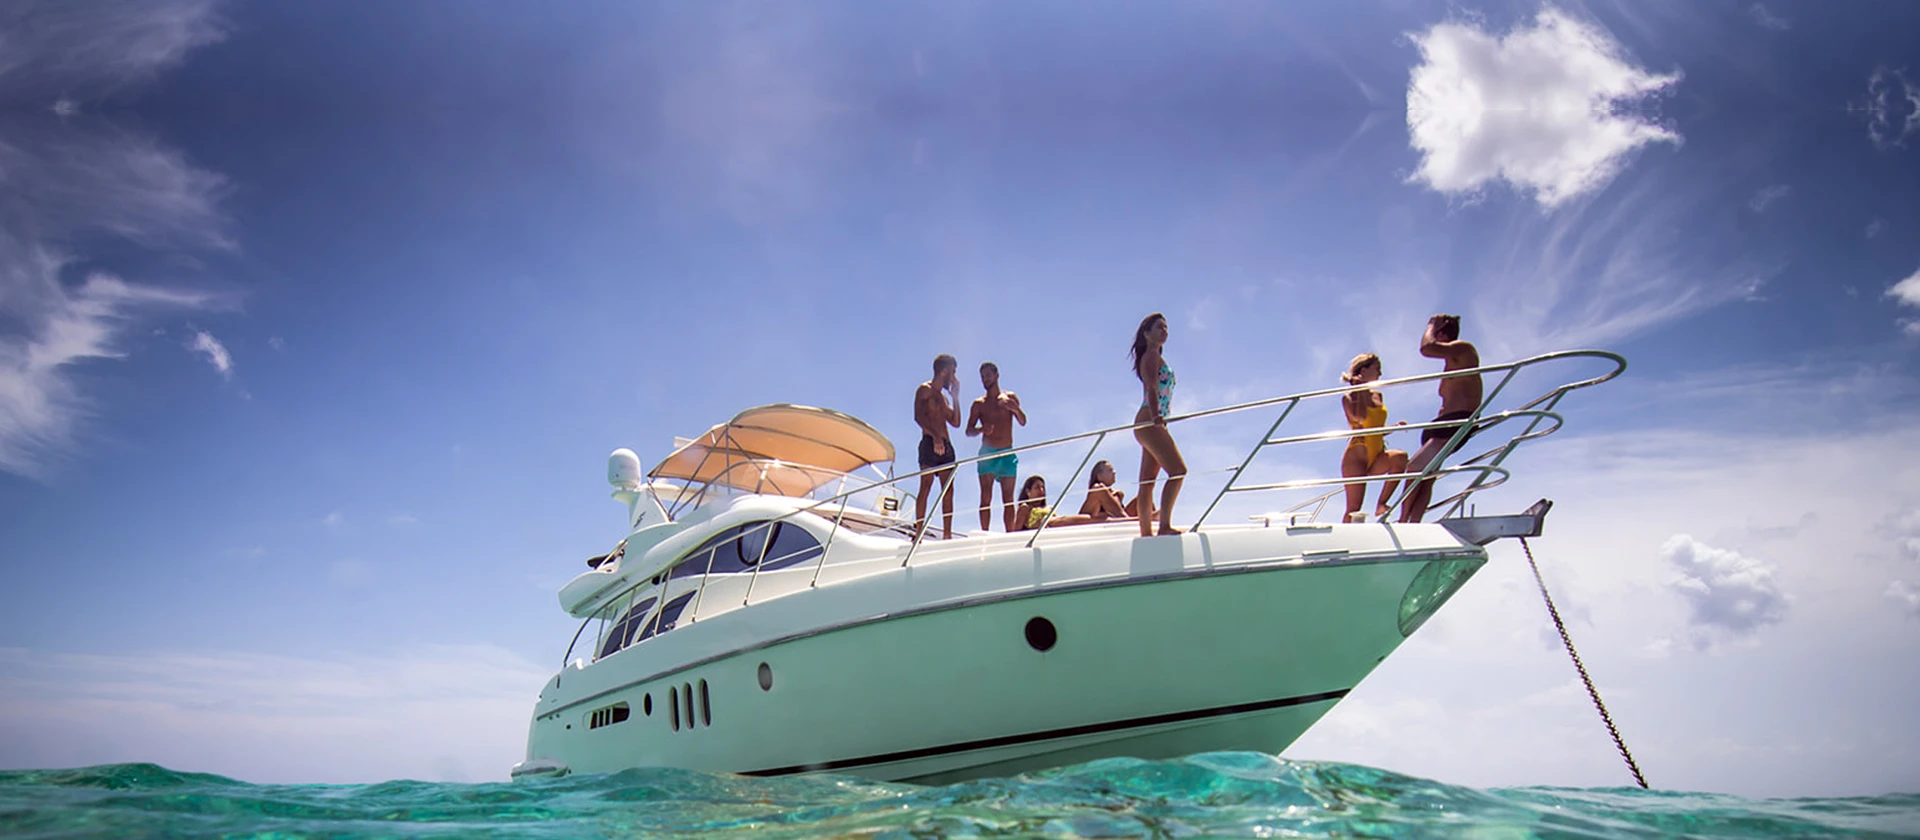 51” Leopard Yacht | Cancun Riviera Maya